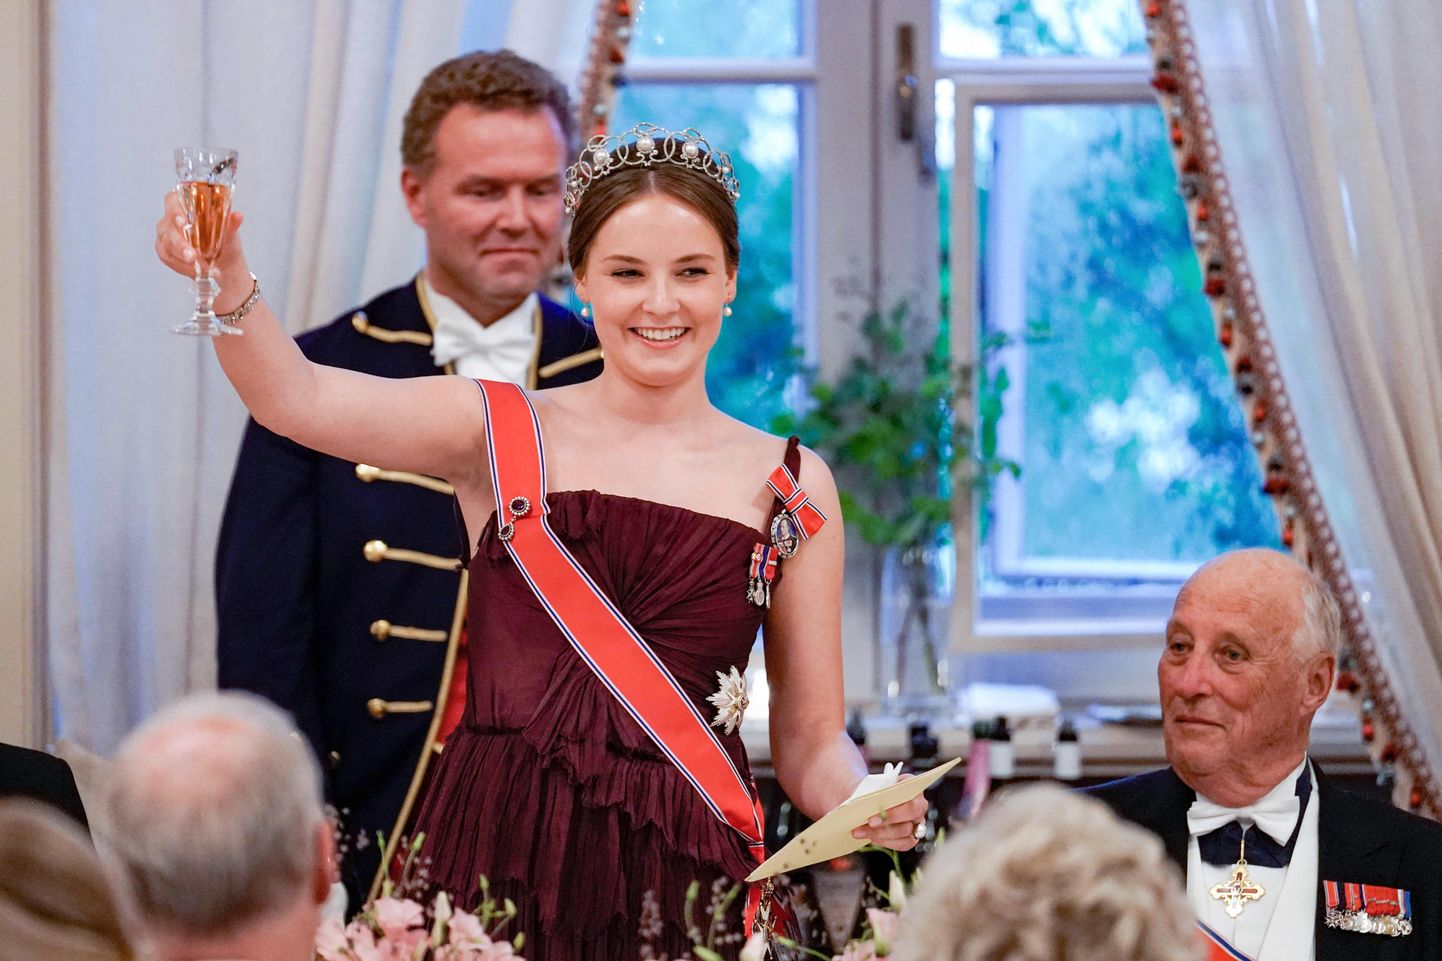 Norra printsess Ingrid Alexandra pidas kõne ja tõstis klaasi 17. juunil 2022 oma 18. sünnipäeva galal Olsos. Ta sai tegelikult 18-aastaseks juba 21. jaanuaril 2022, kuid sünnipäev lükati koroonaviiruse tõttu edasi